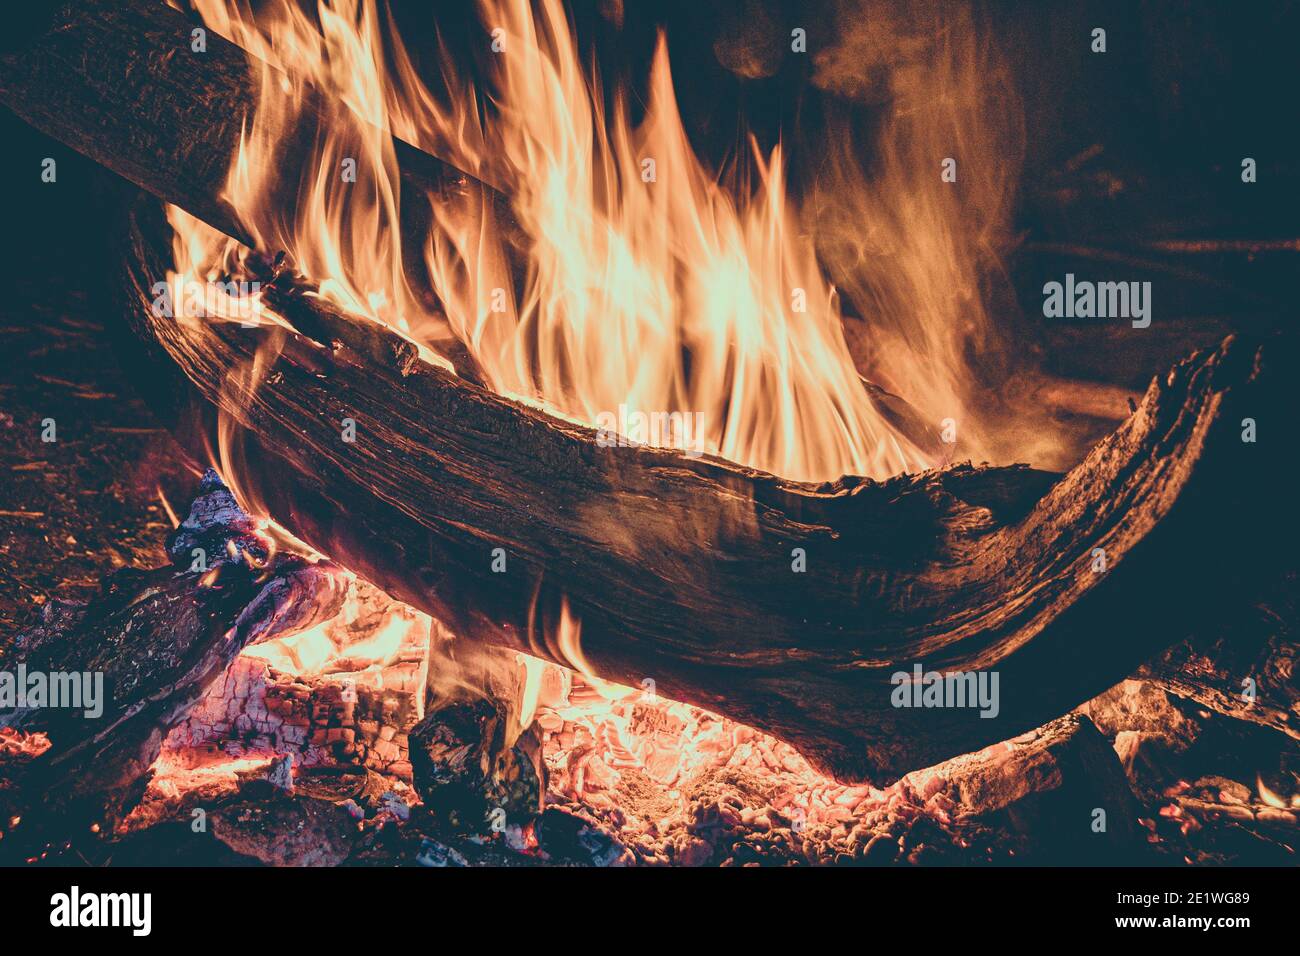 Holz brennt im Feuer. Feuer für bushcraft und Tourismus in der Nacht gibt Wärme und Licht. Stockfoto